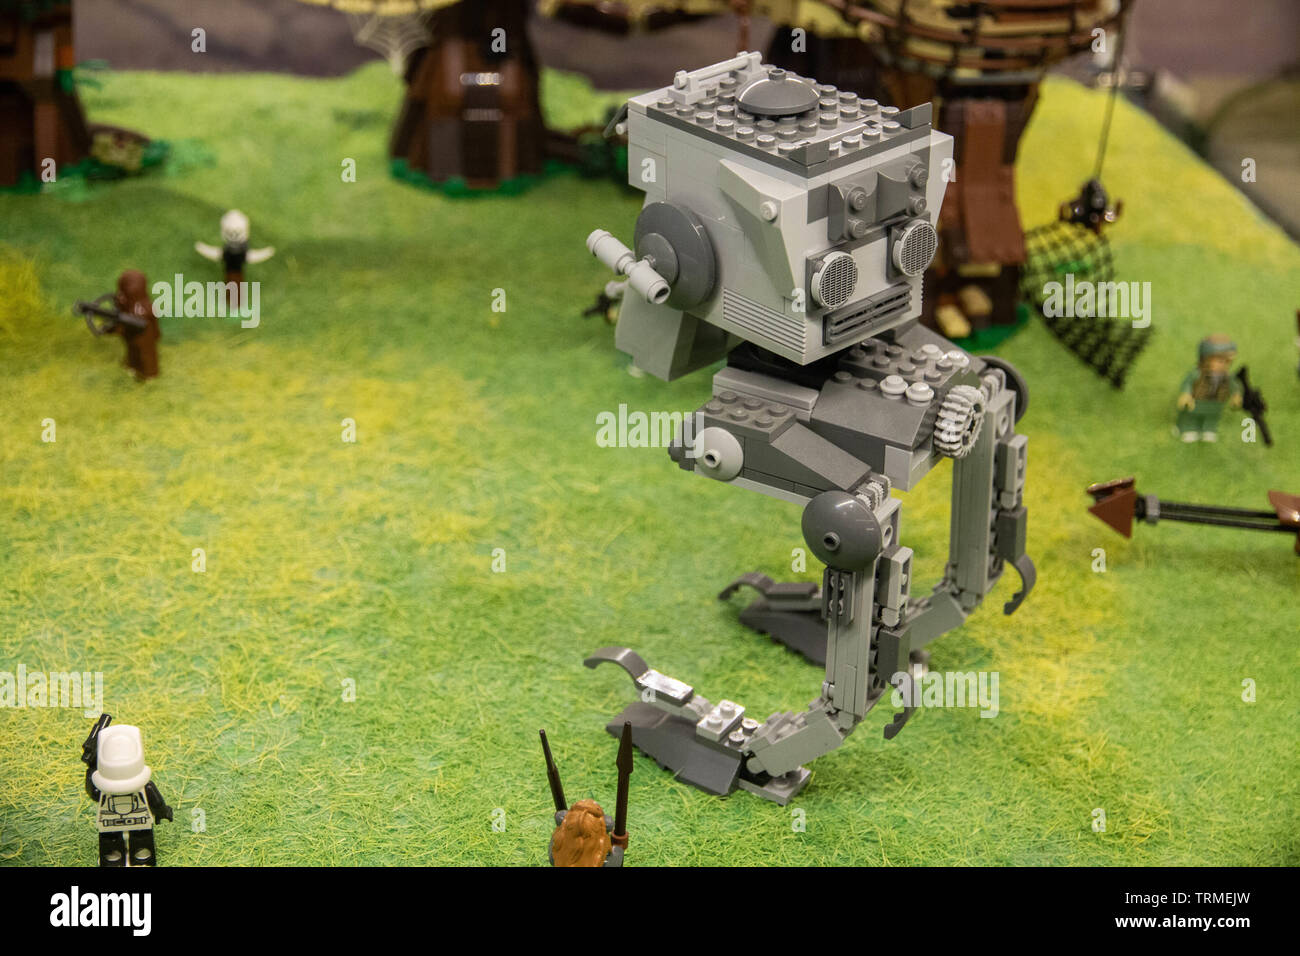 LEGO Star Wars - LEGO Exhibition 2019, Budapest, Hungary Stock Photo